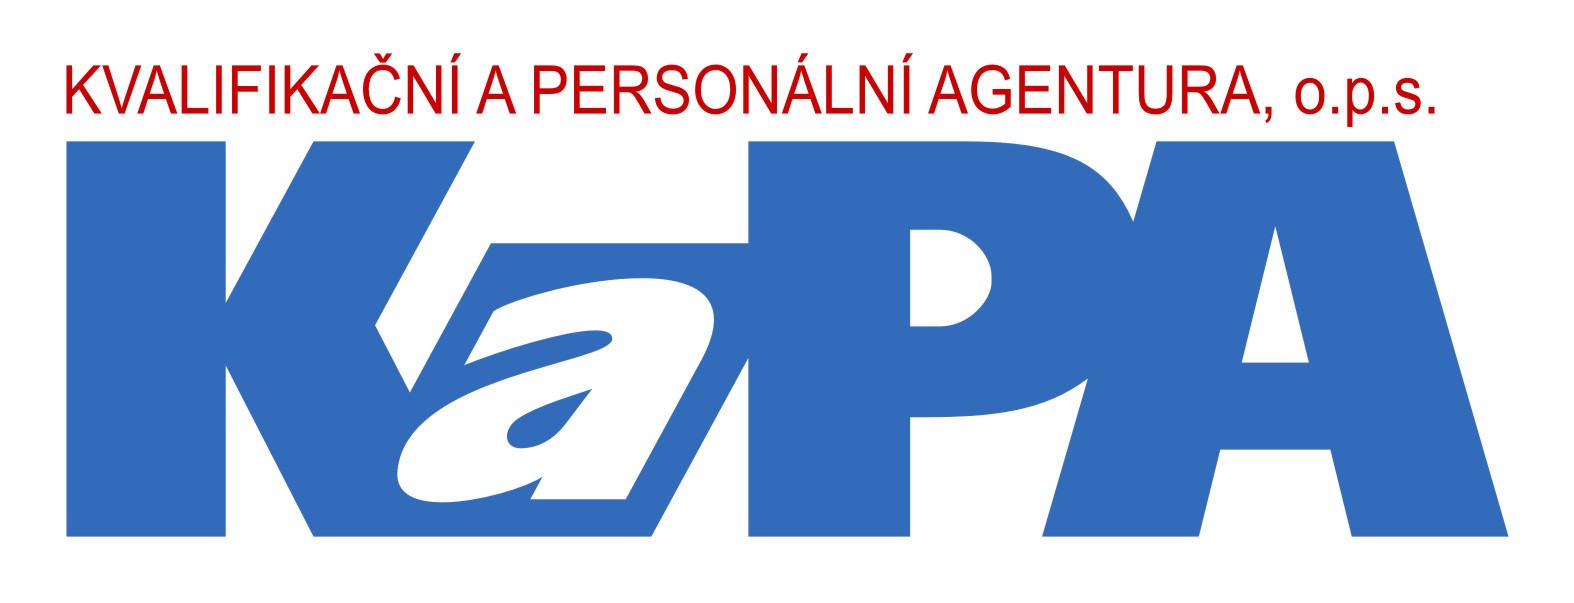 Logo Kvalifikační a personální agentura, o. p. s.